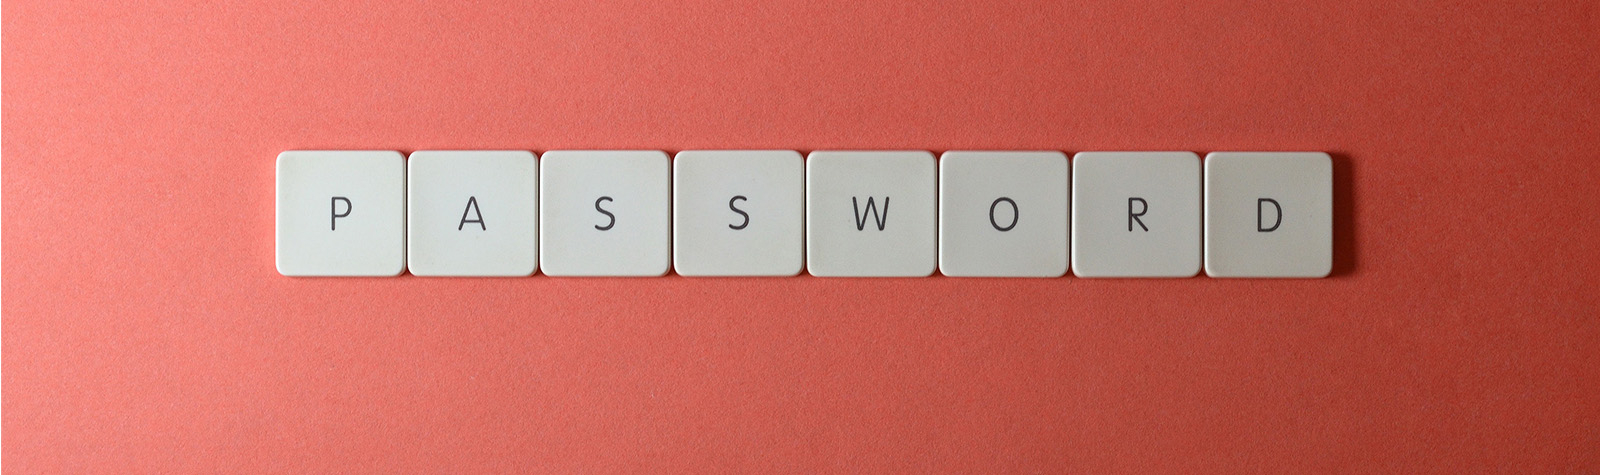 Dit zijn de meest voorkomende wachtwoorden ter wereld